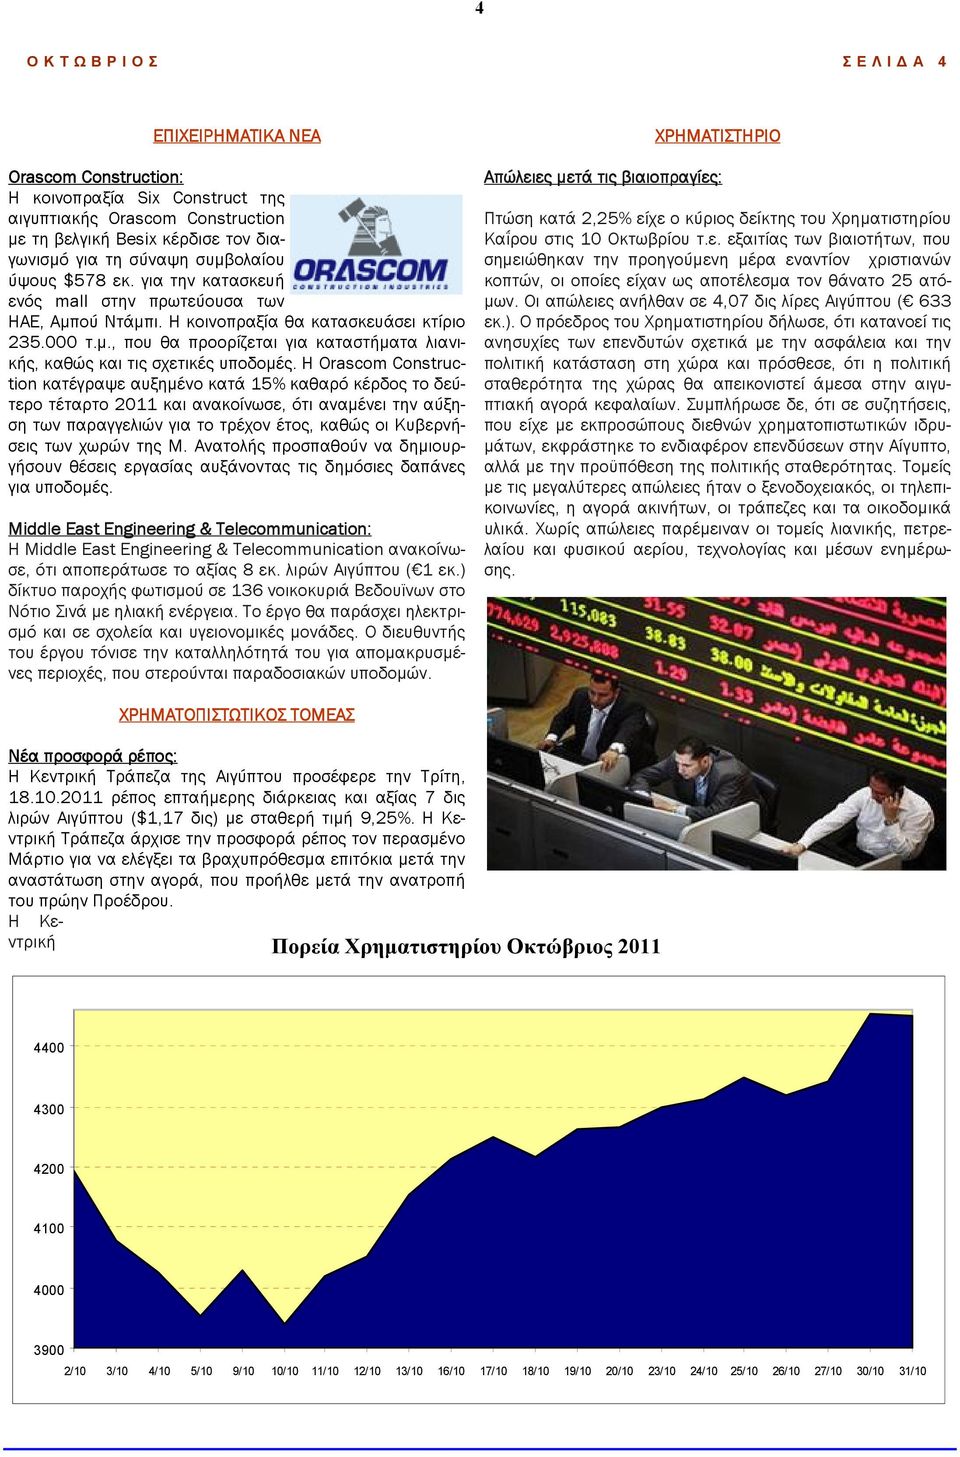 Η Orascom Construction κατέγραψε αυξηµένο κατά 15% καθαρό κέρδος το δεύτερο τέταρτο 2011 και ανακοίνωσε, ότι αναµένει την αύξηση των παραγγελιών για το τρέχον έτος, καθώς οι Κυβερνήσεις των χωρών της